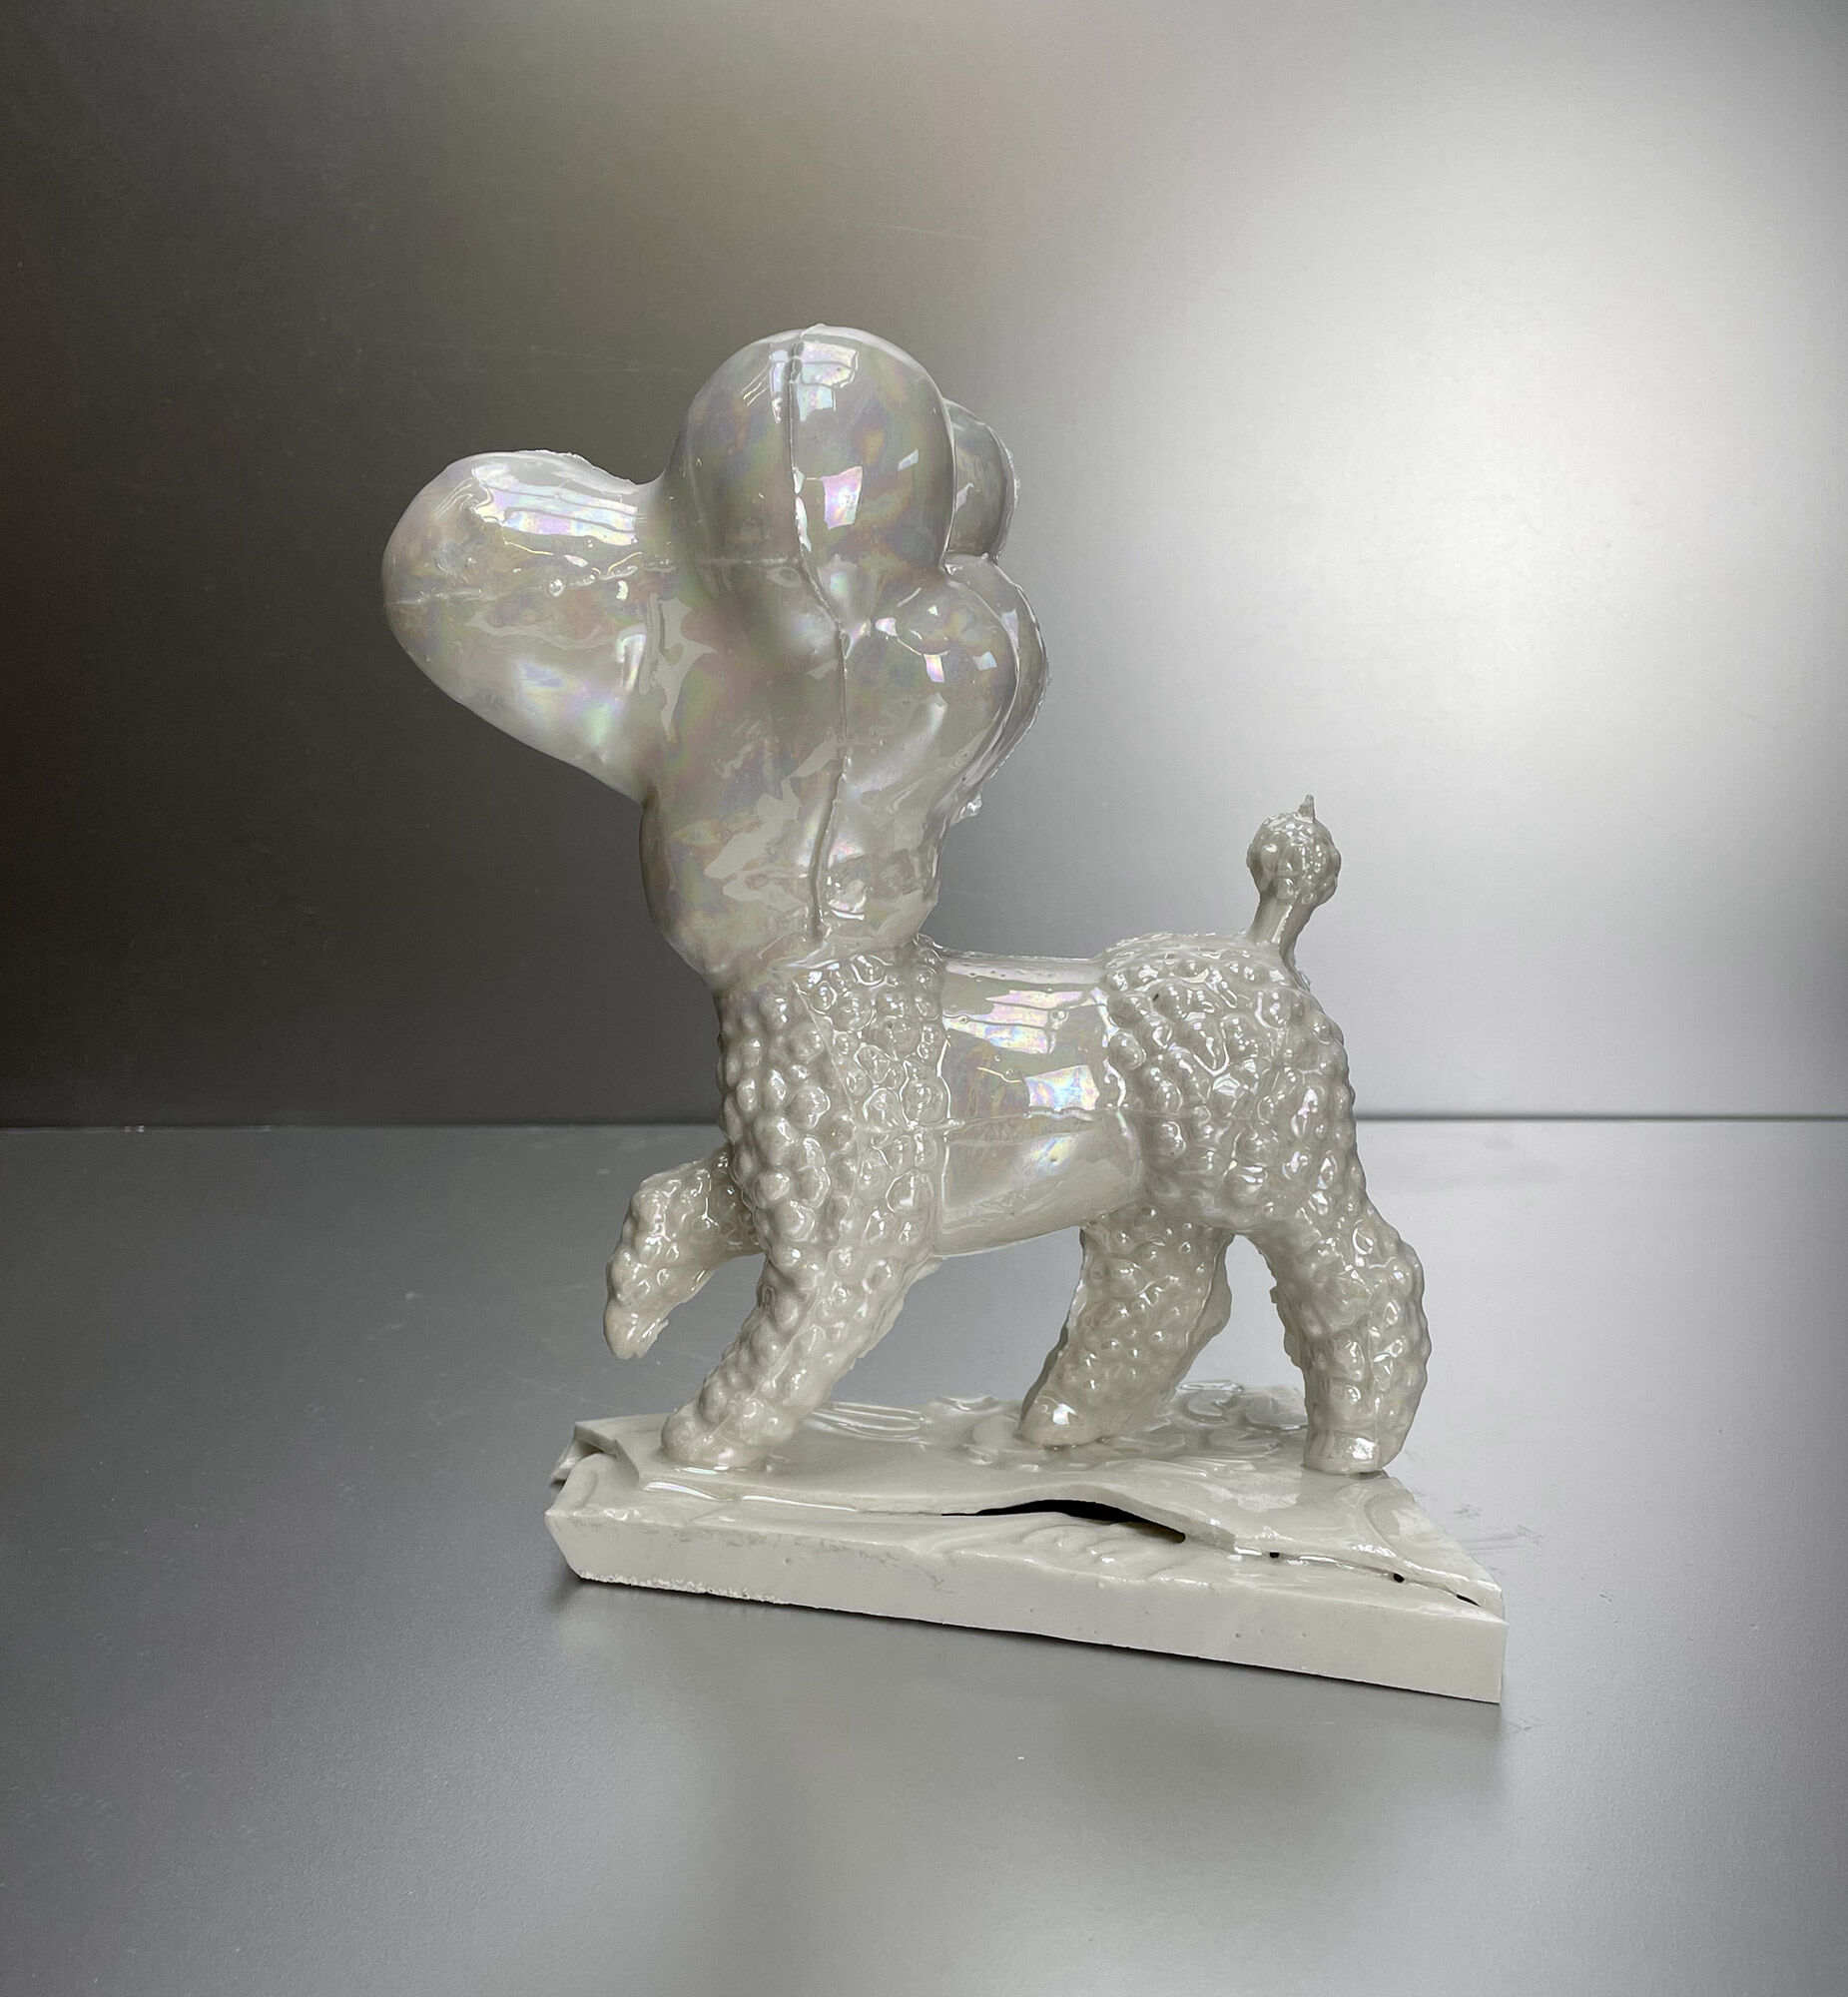 Sculpture "Imperial" (2020) (Unique piece) by Hannes Uhlenhaut